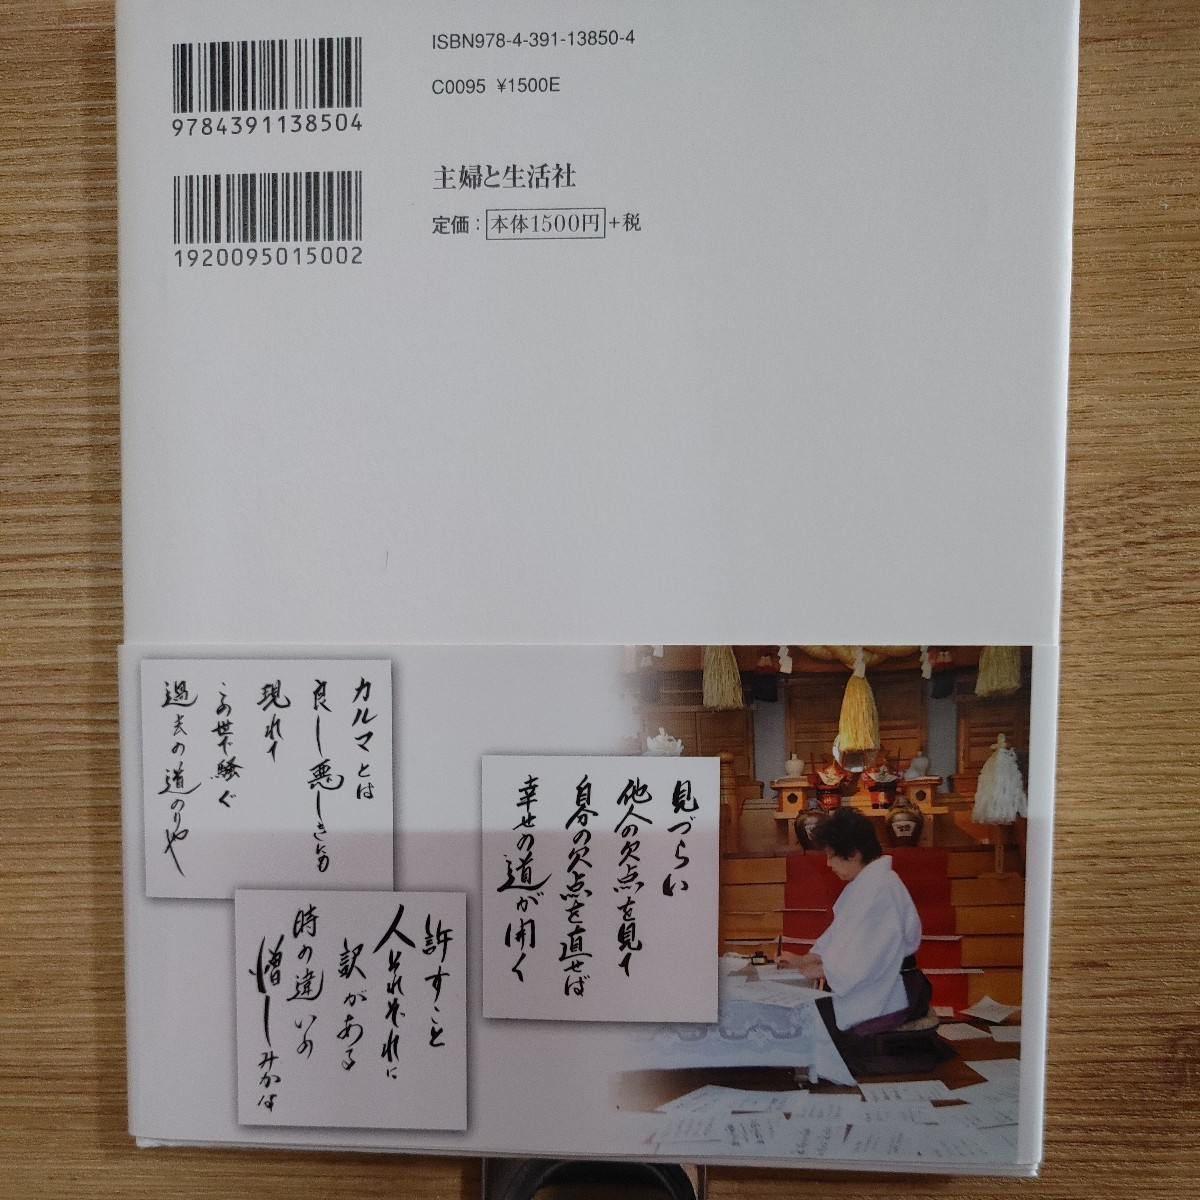 【古本雅】幸せの詩が聞こえる 木村藤子著 主婦と生活社 ISBN978-4-391-13850-4_画像2